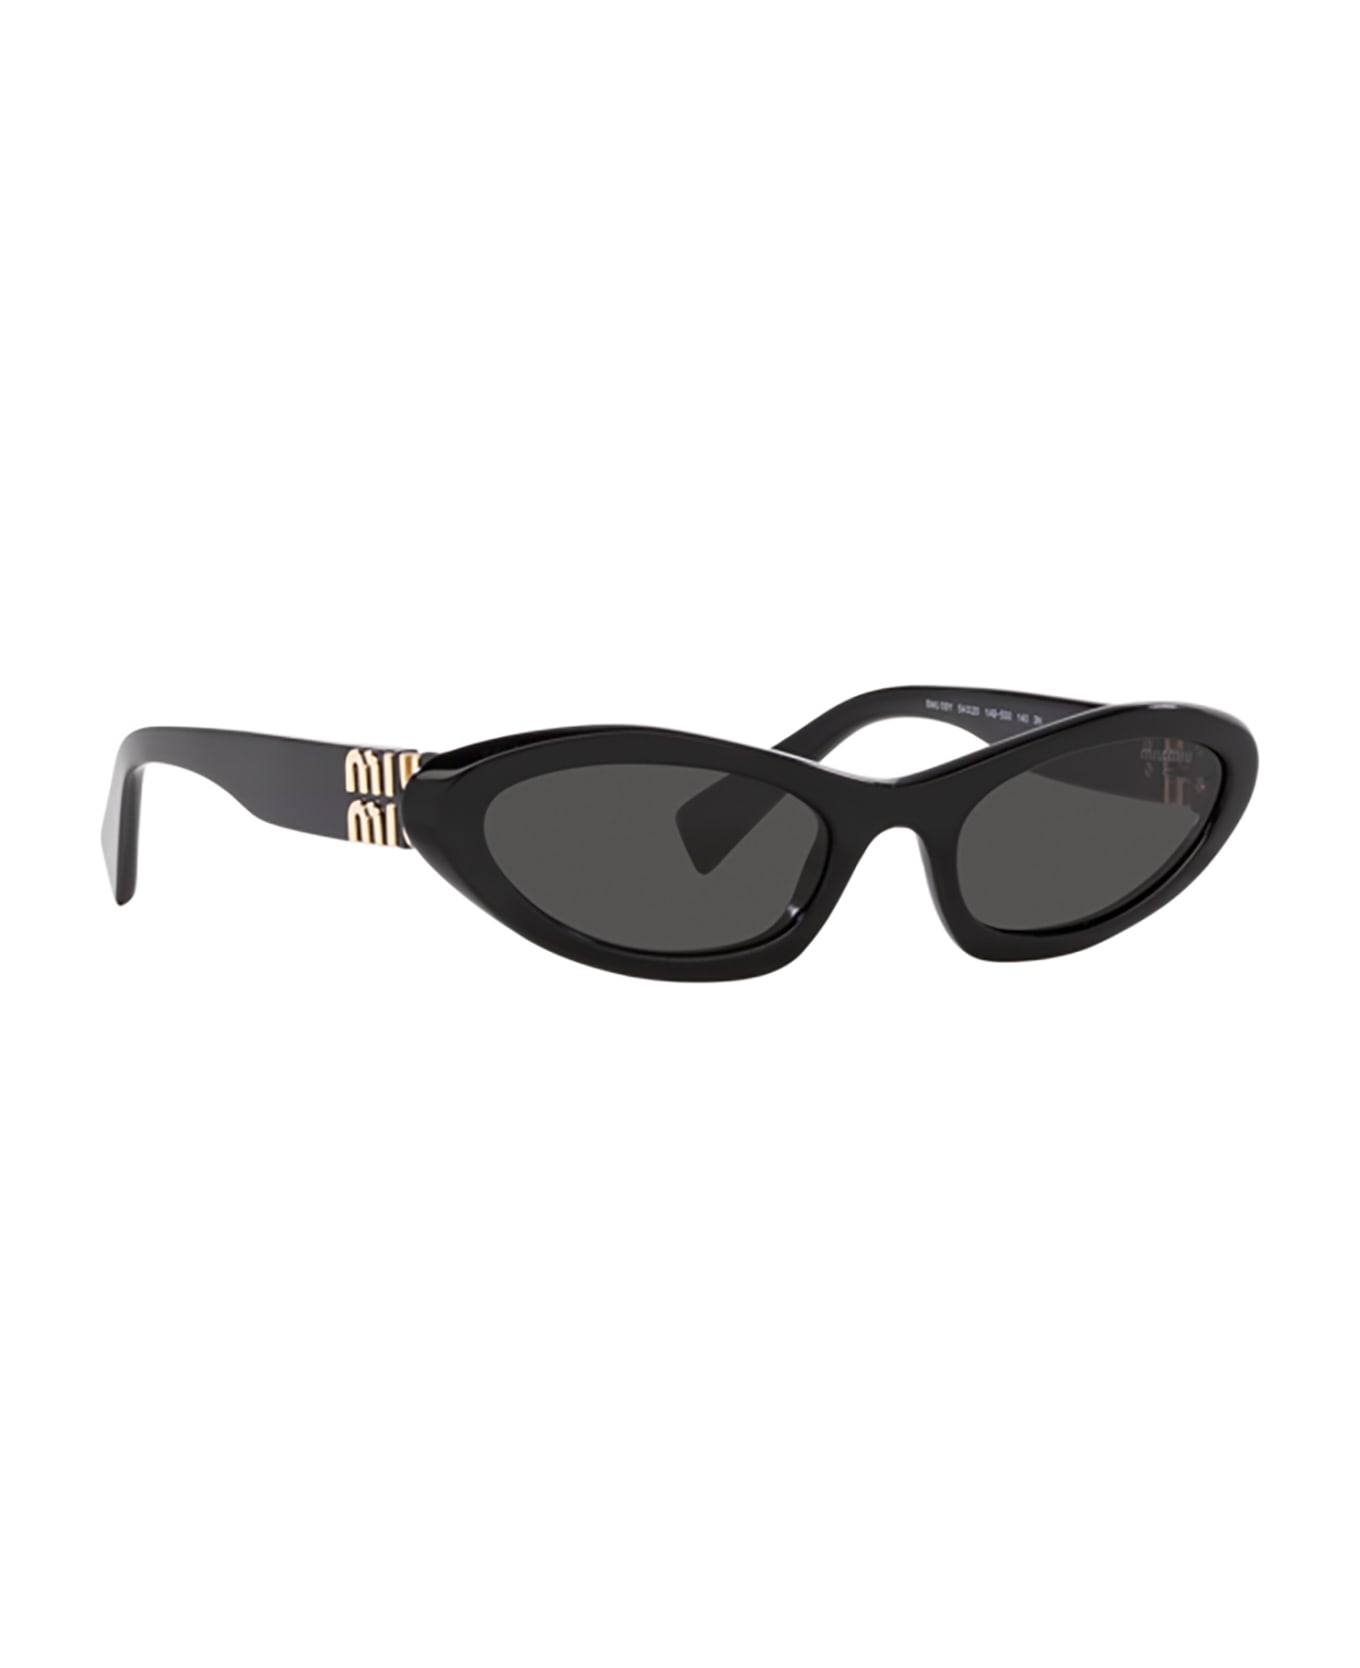 Miu Miu Eyewear Mu 09ys Black Sunglasses - Black